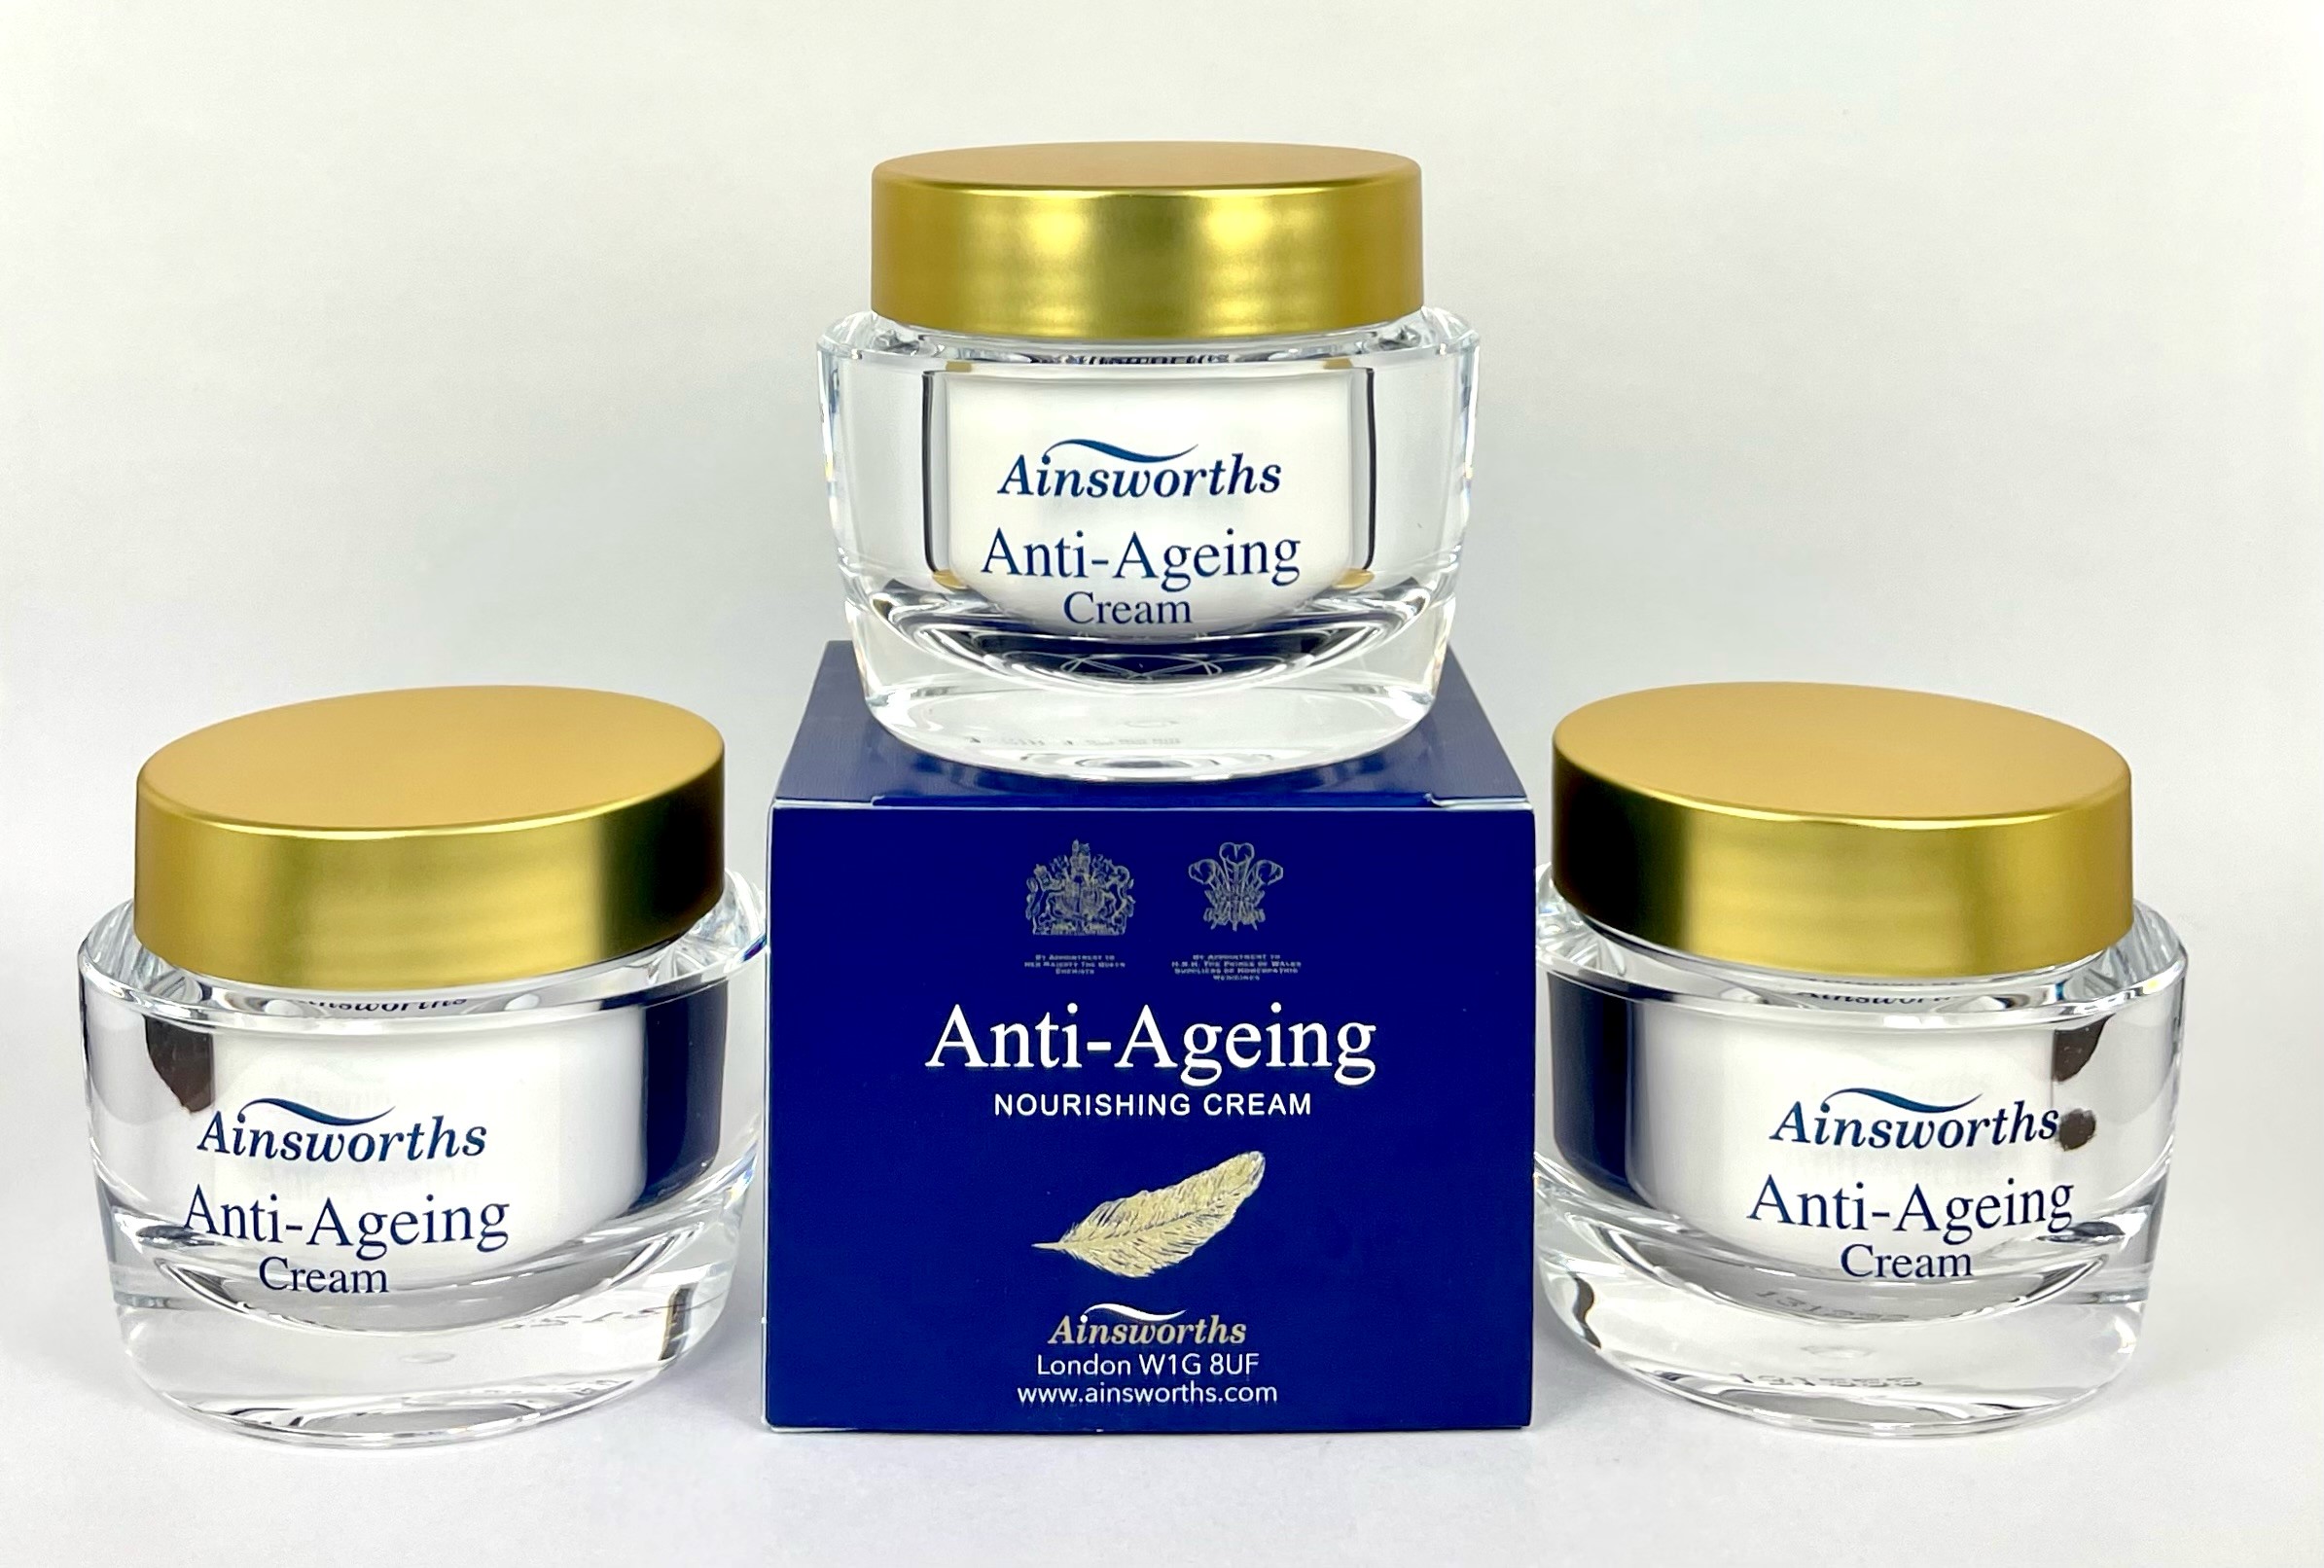 Anti-Ageing Cream